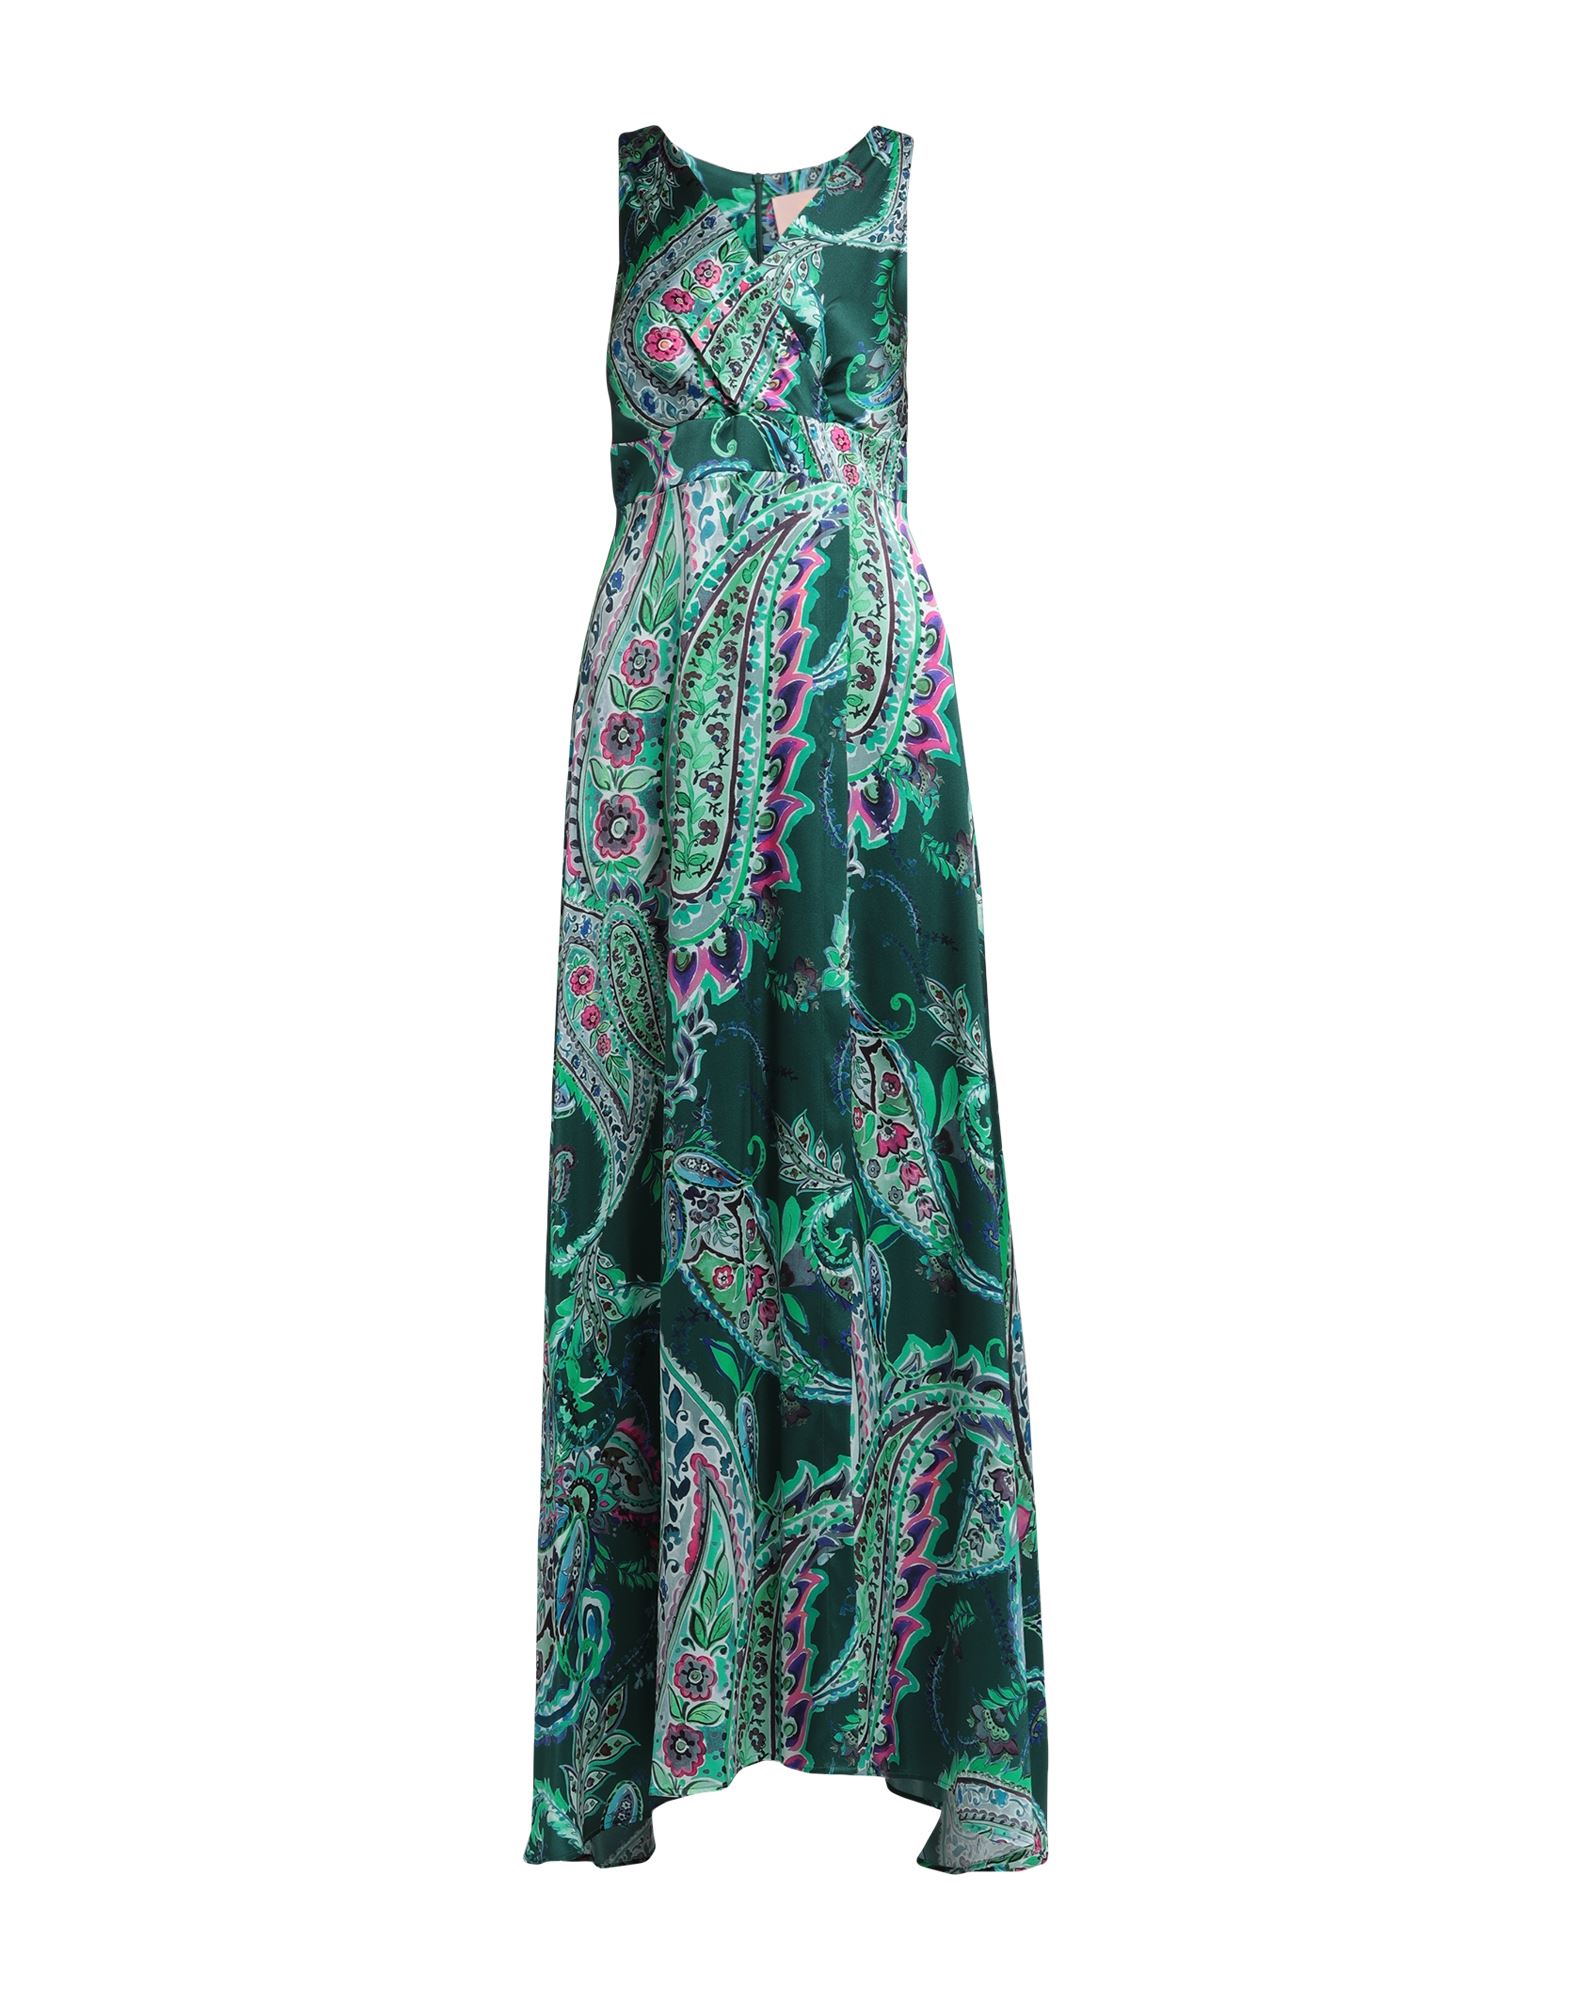 Kitagi® Kitagi Woman Maxi Dress Dark Green Size 8 Silk, Elastane